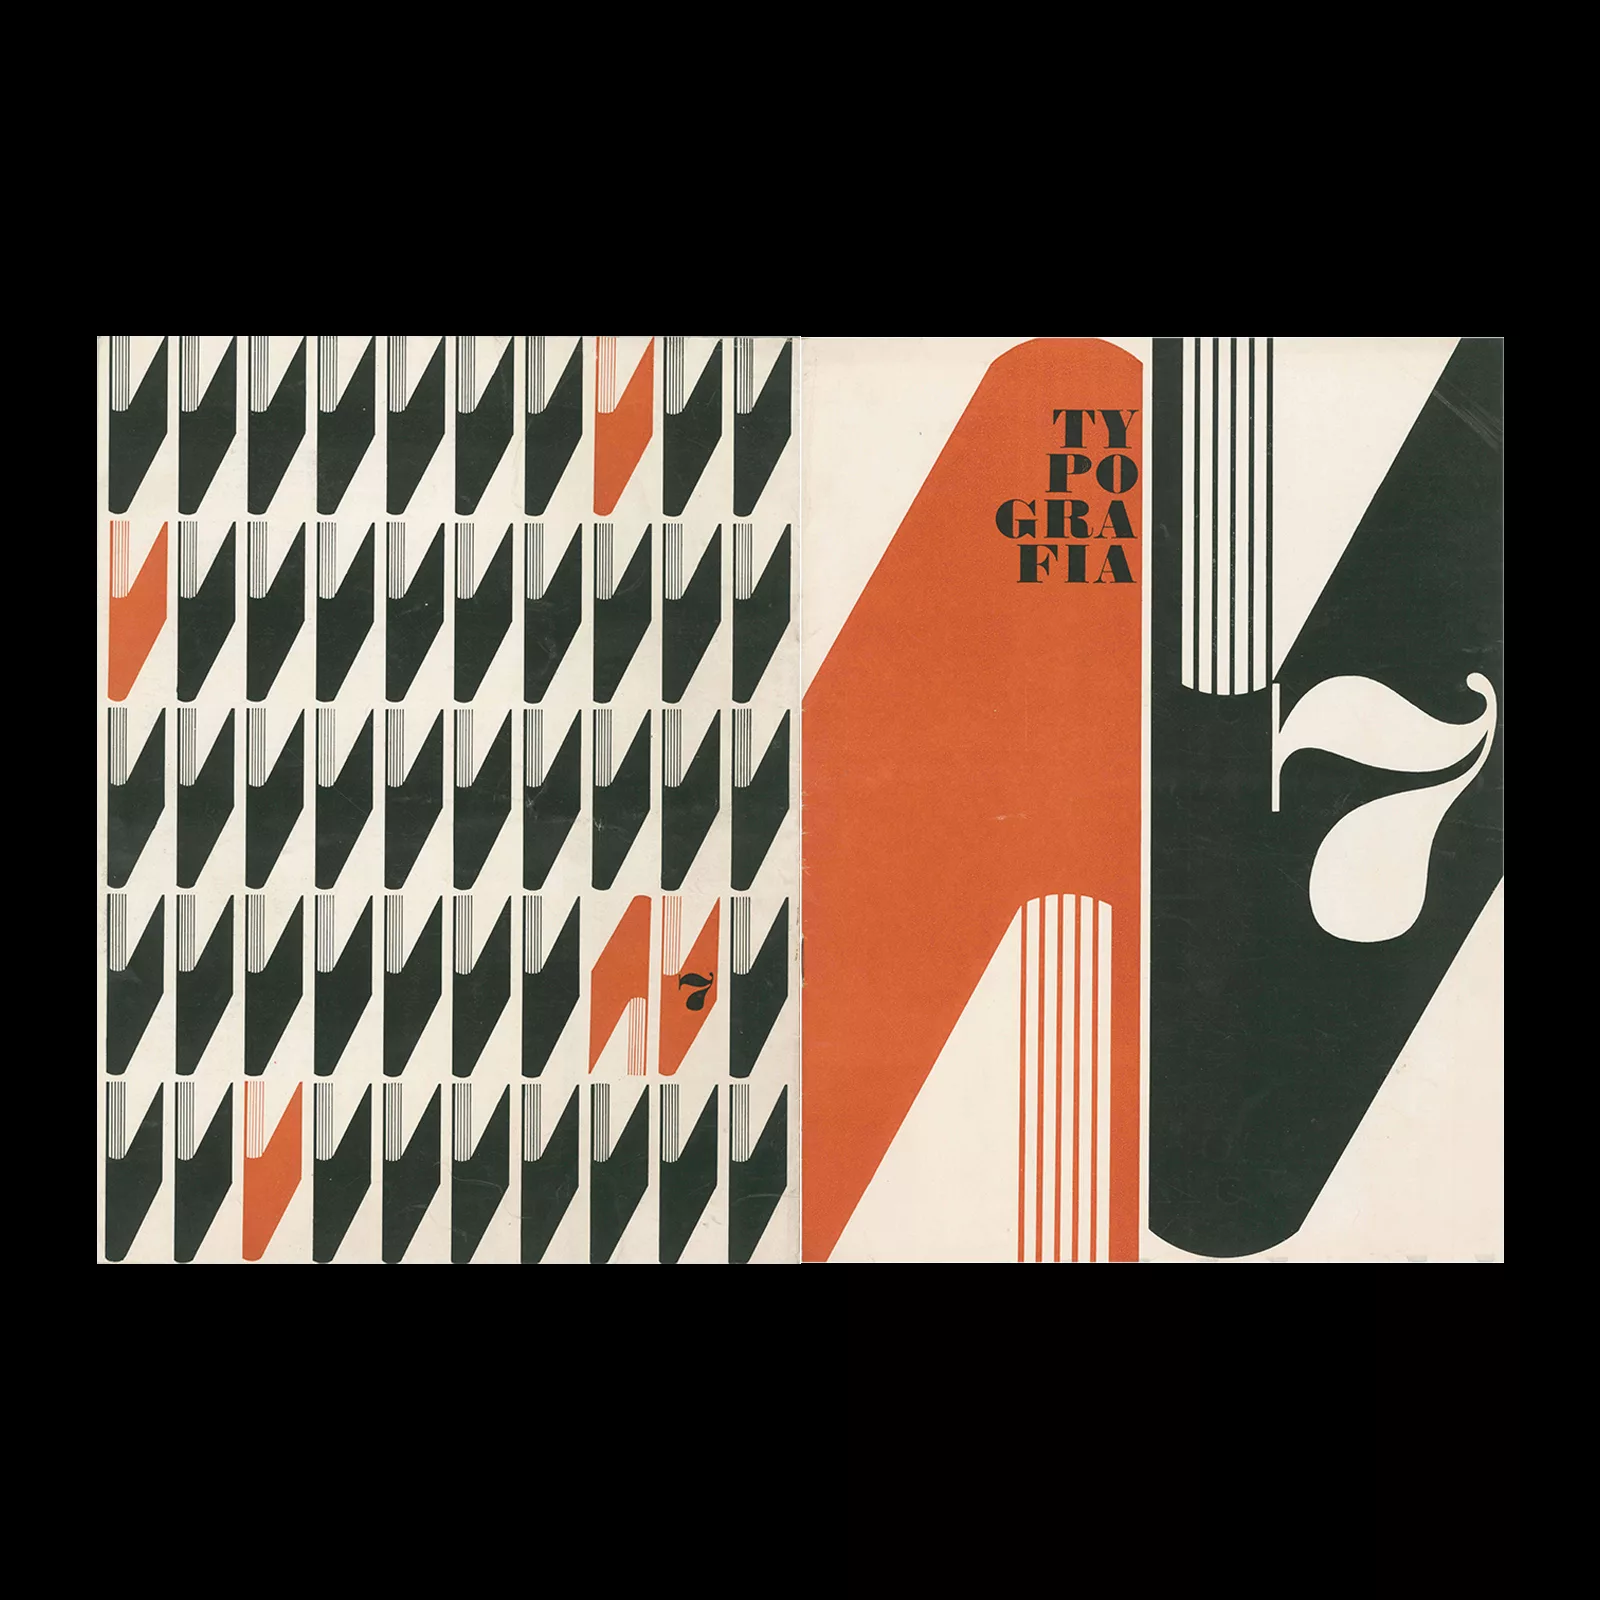 Typografia, ročník 66, 07, 1963. Cover design by Vladislav Najbrt. 